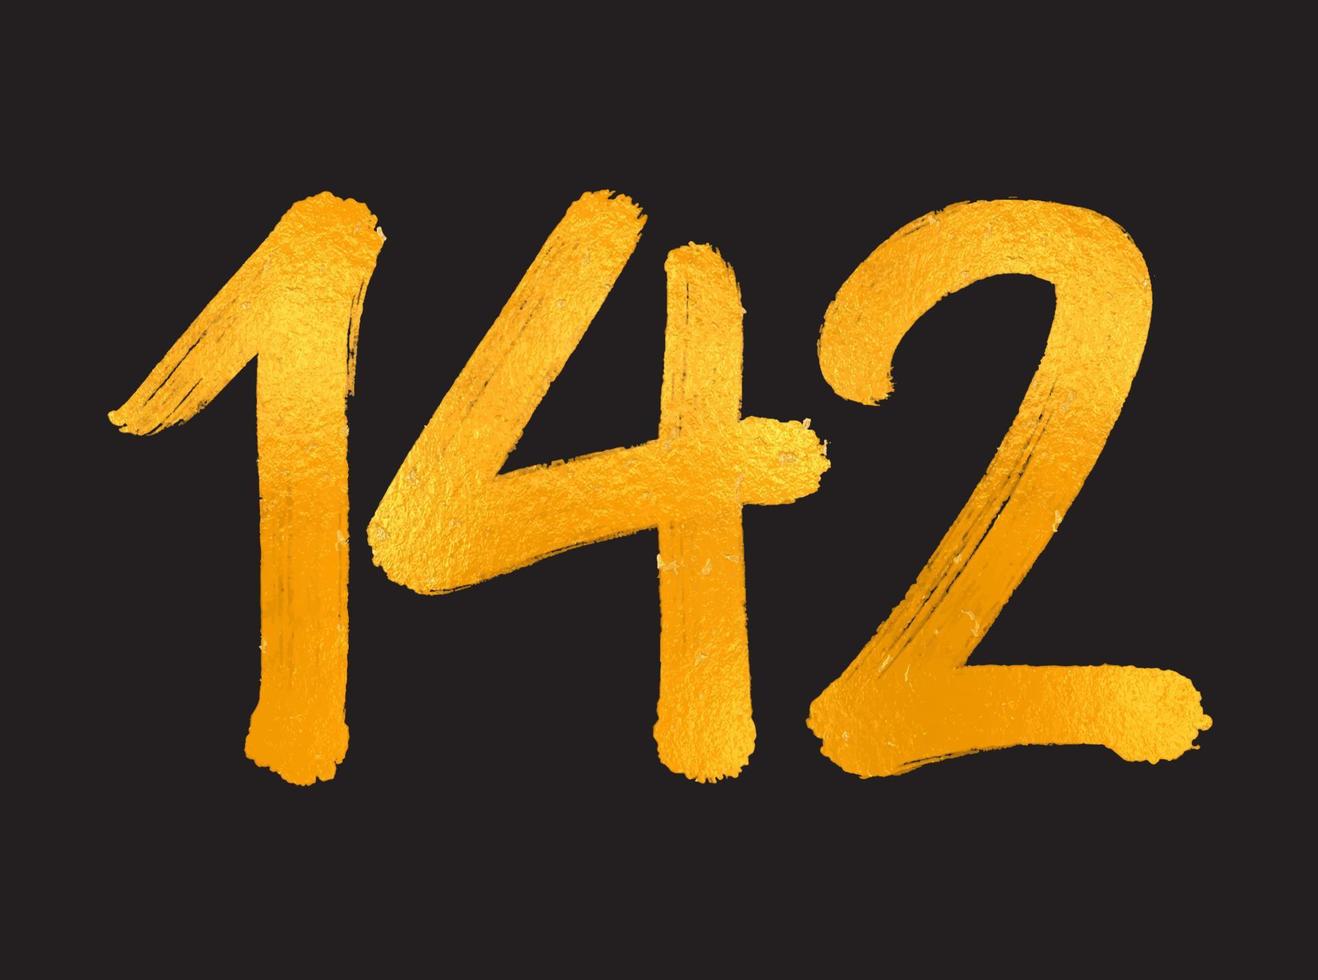 142-Nummer-Logo-Vektorillustration, 142-jähriges Jubiläumsfeier-Vektorvorlage, 142. Geburtstag, Goldbeschriftung Zahlen Pinselzeichnung handgezeichnete Skizze, Nummer-Logo-Design für Druck, T-Shirt vektor